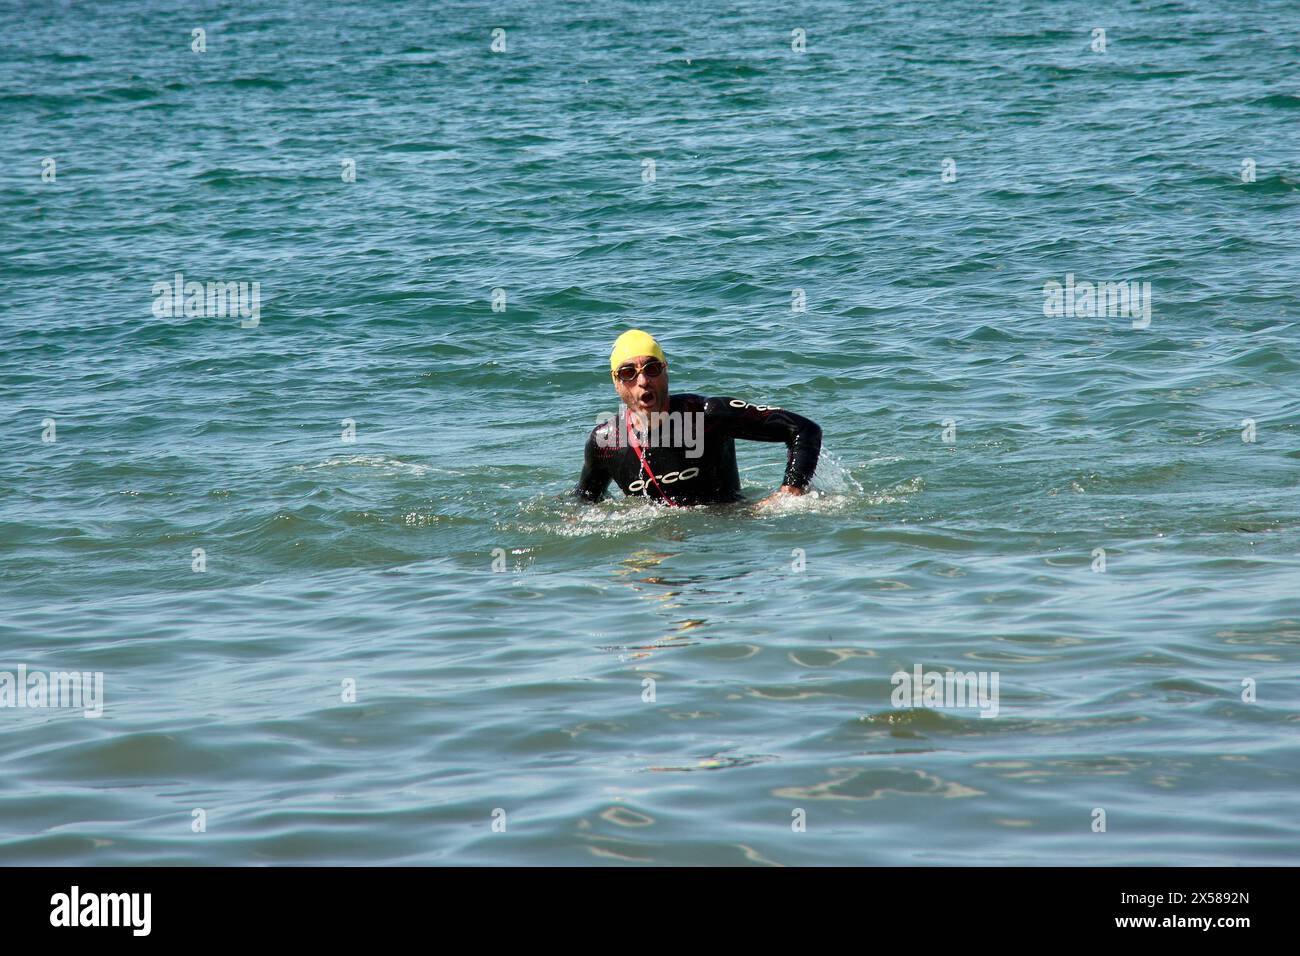 Sabaris, Baiona, Pontevedra, Espagne ; 15 juillet 2023 ; les compétiteurs de triathlon sortent de l'eau dans leurs combinaisons Banque D'Images